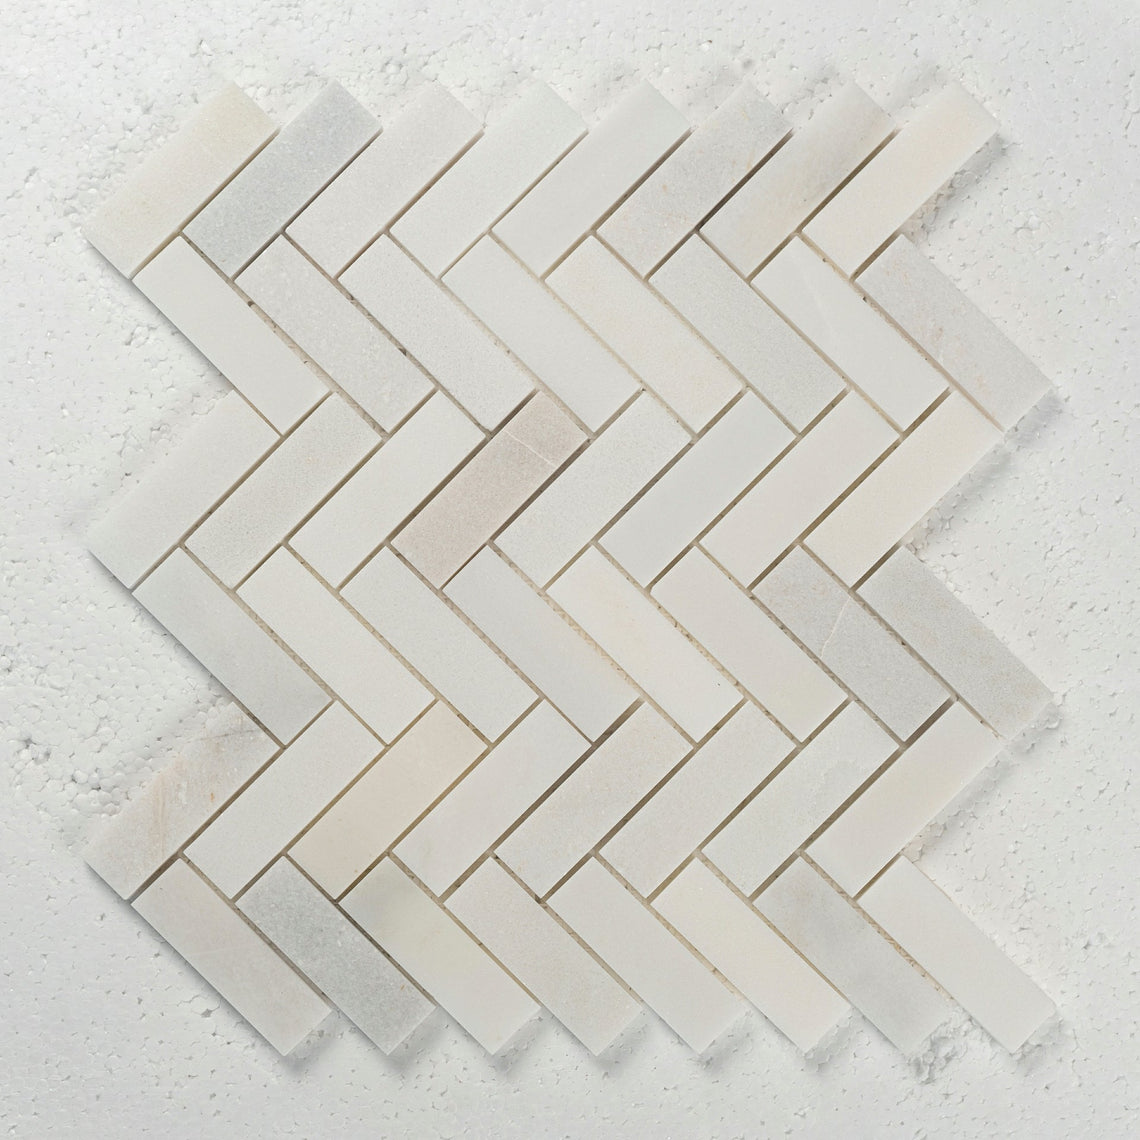 12 X 12 in. Eastern White 1x3 Herringbone Honed Marble Mosaic Tile